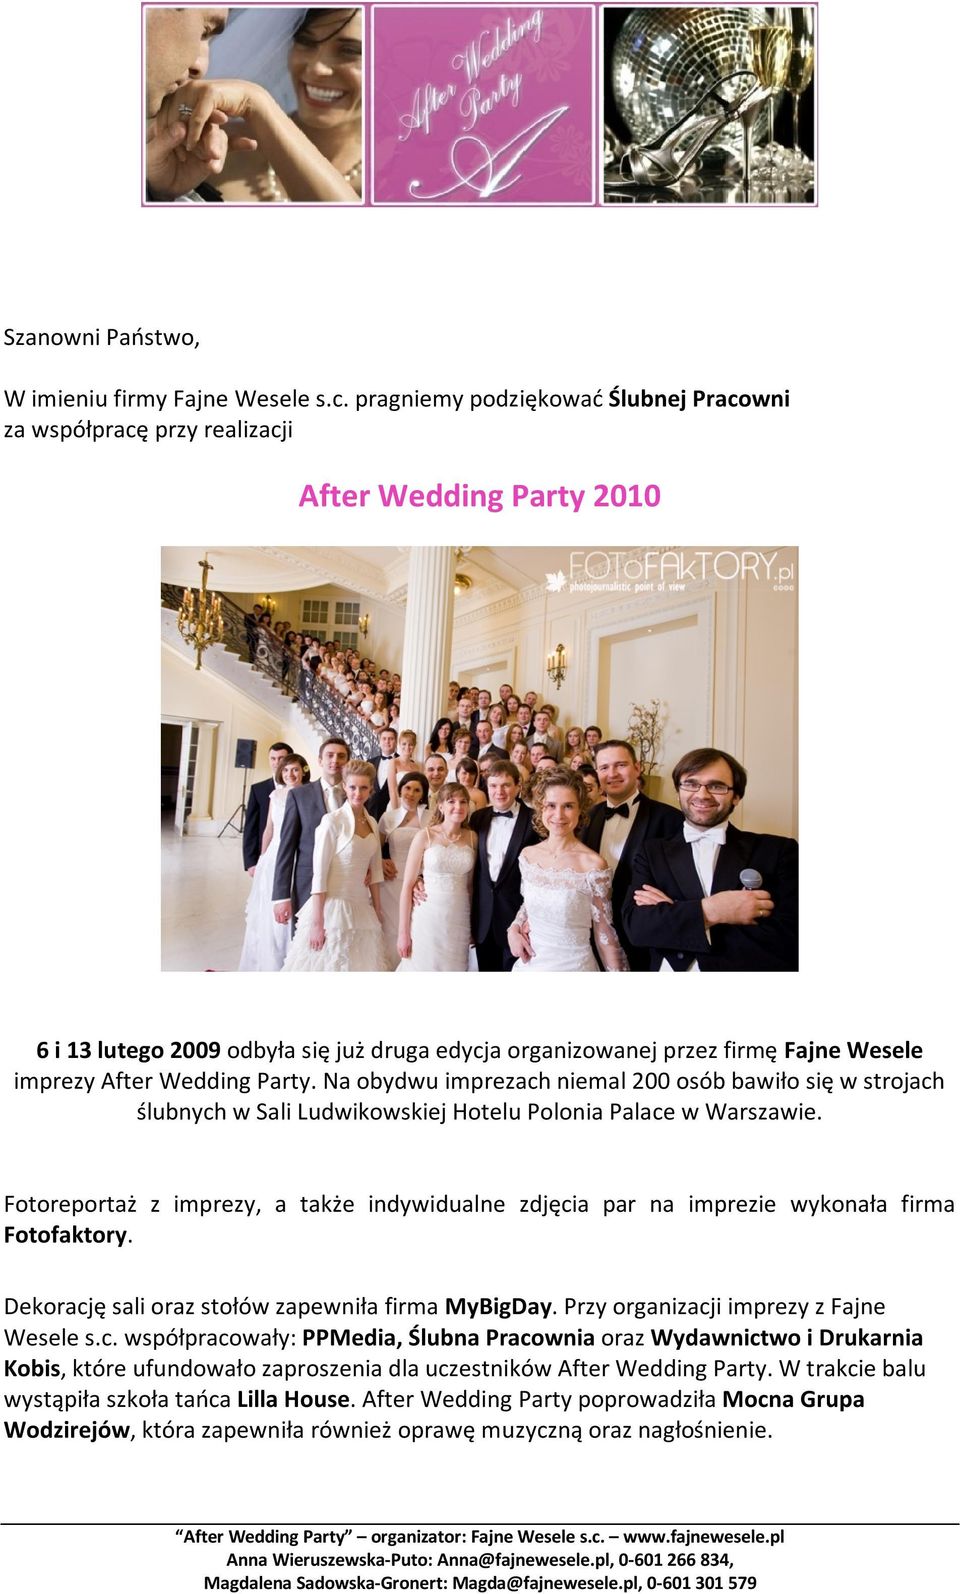 Wedding Party. Na obydwu imprezach niemal 200 osób bawiło się w strojach ślubnych w Sali Ludwikowskiej Hotelu Polonia Palace w Warszawie.